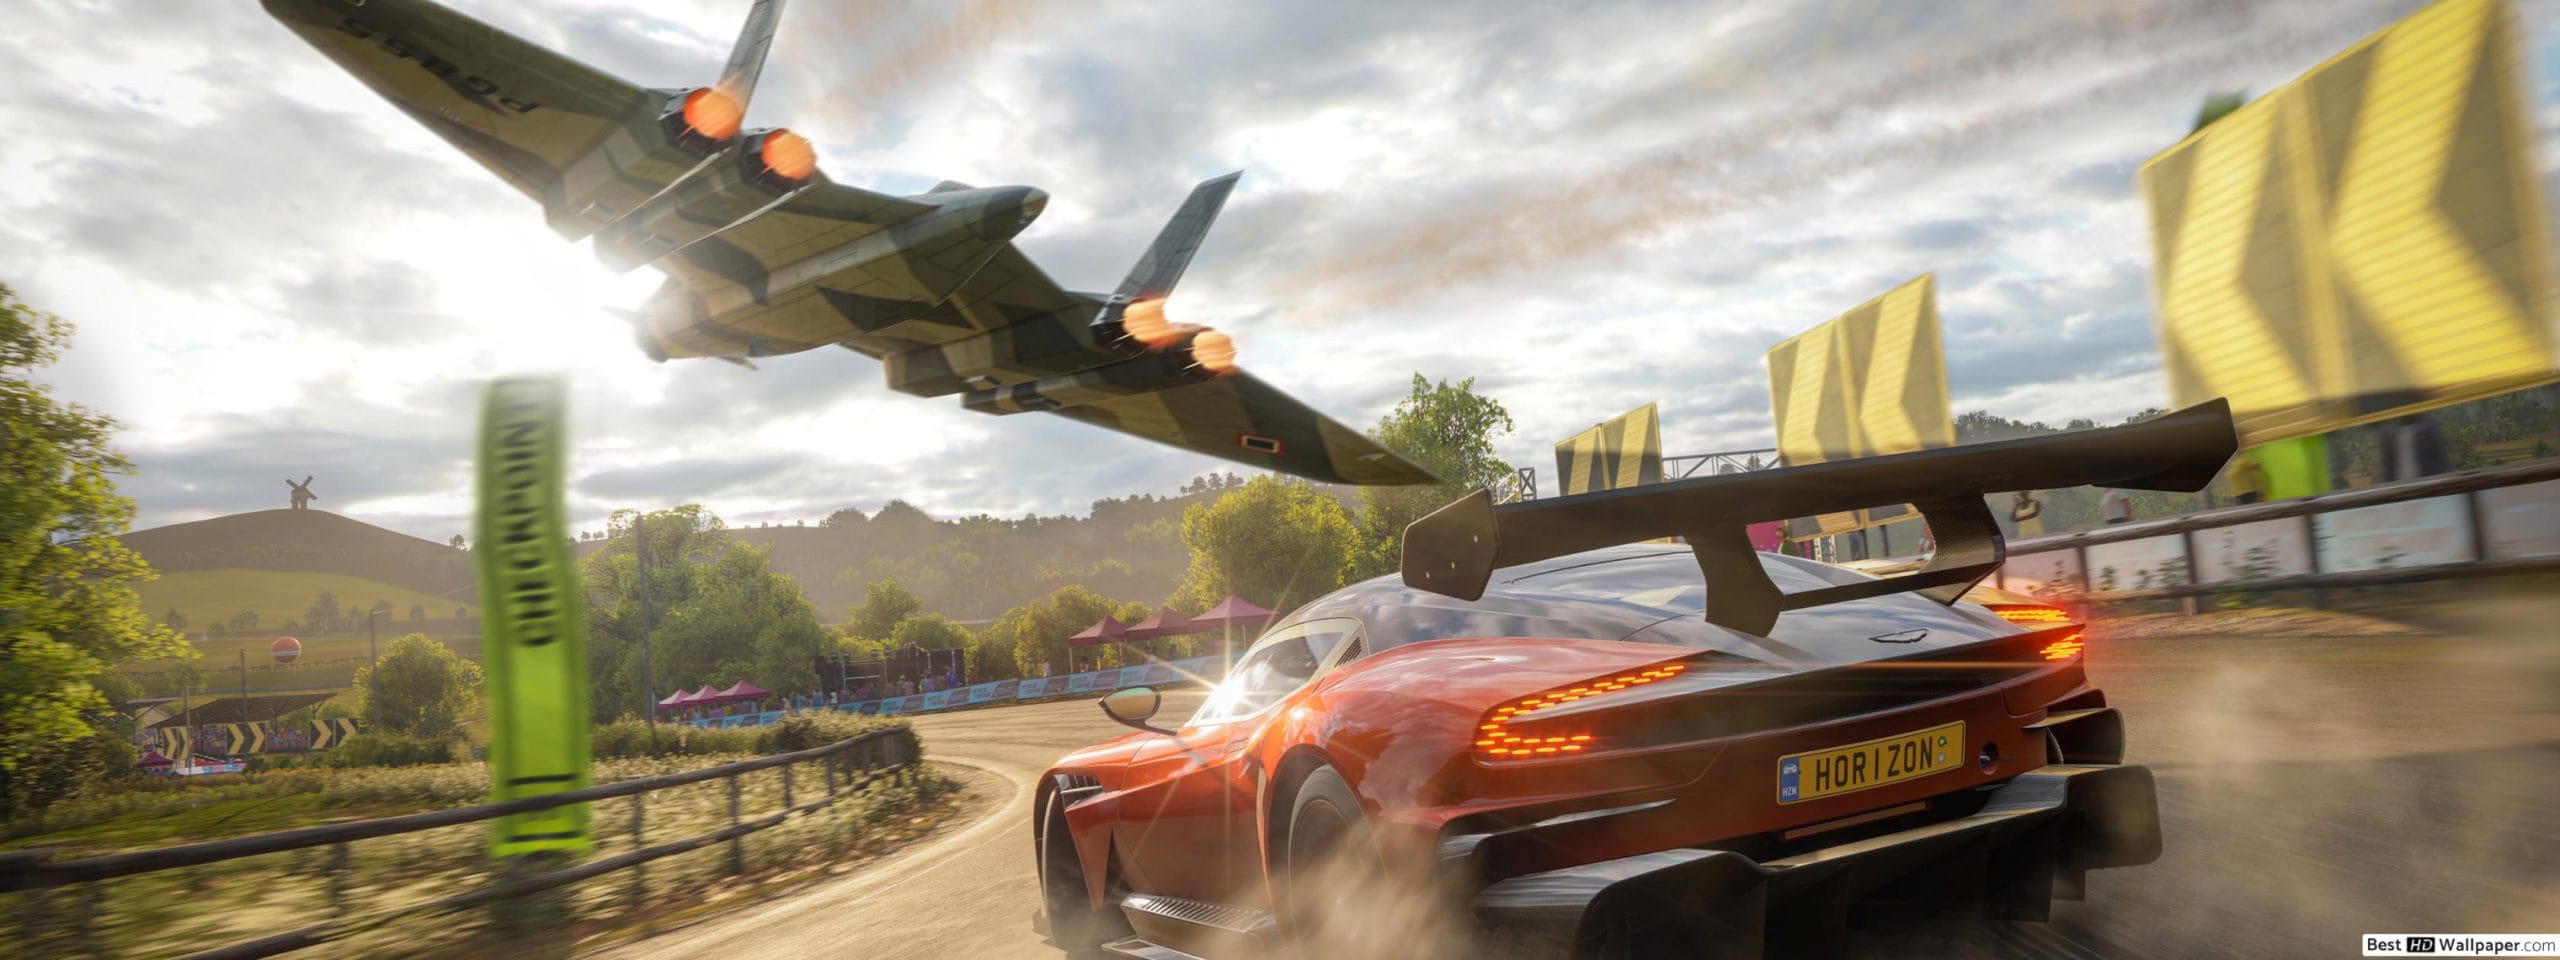 لعبة Forza Horizon 4 هتكون مُحسنة على Xbox Series X